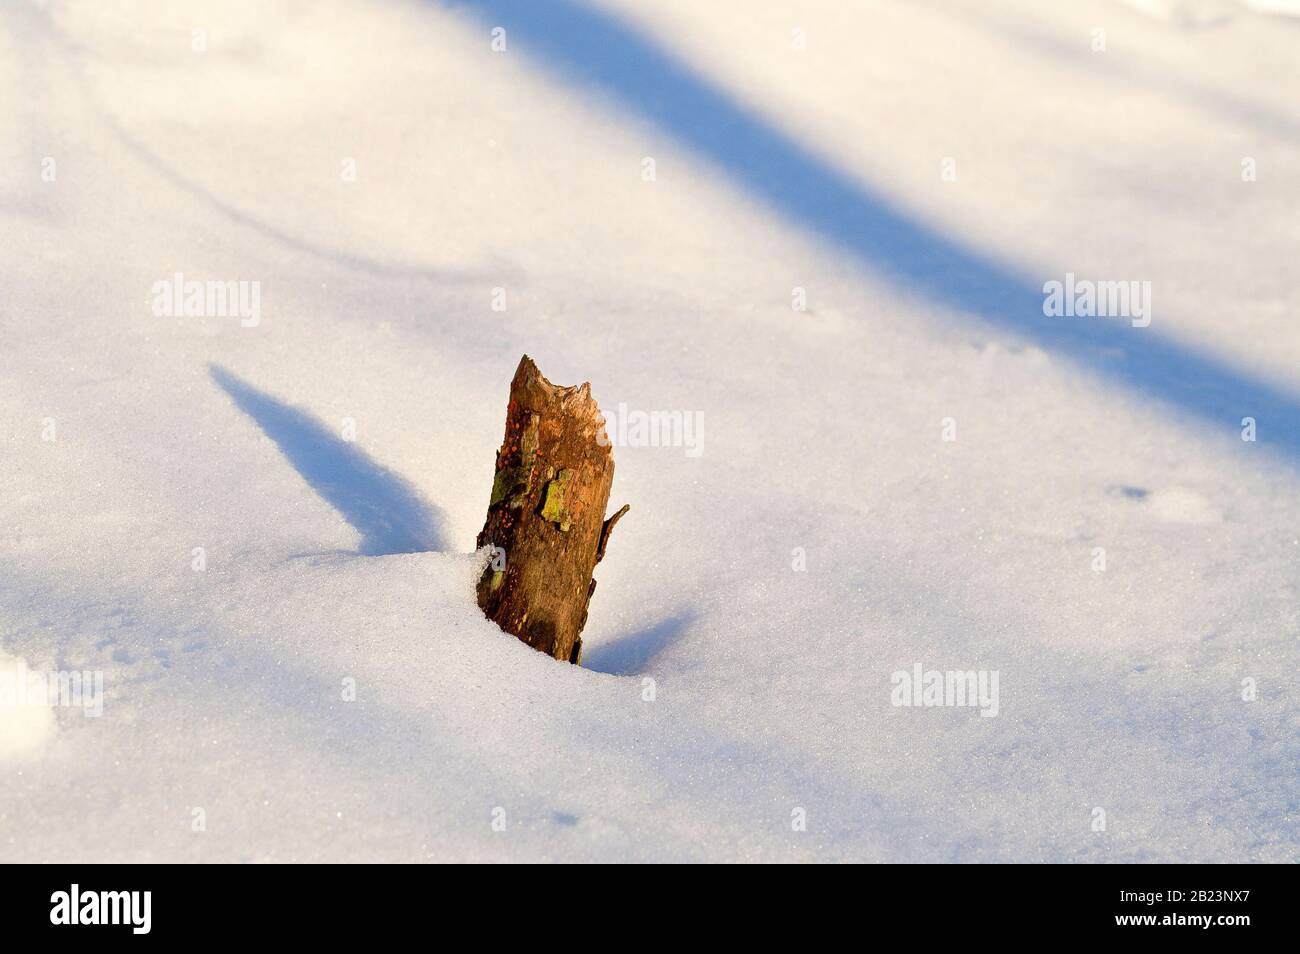 Nahaufnahme eines abgebrochenen Astes, der von einer niedrigen Wintersonne angezündet wird und oben aus einer Schneeverwehung ragt. Stockfoto